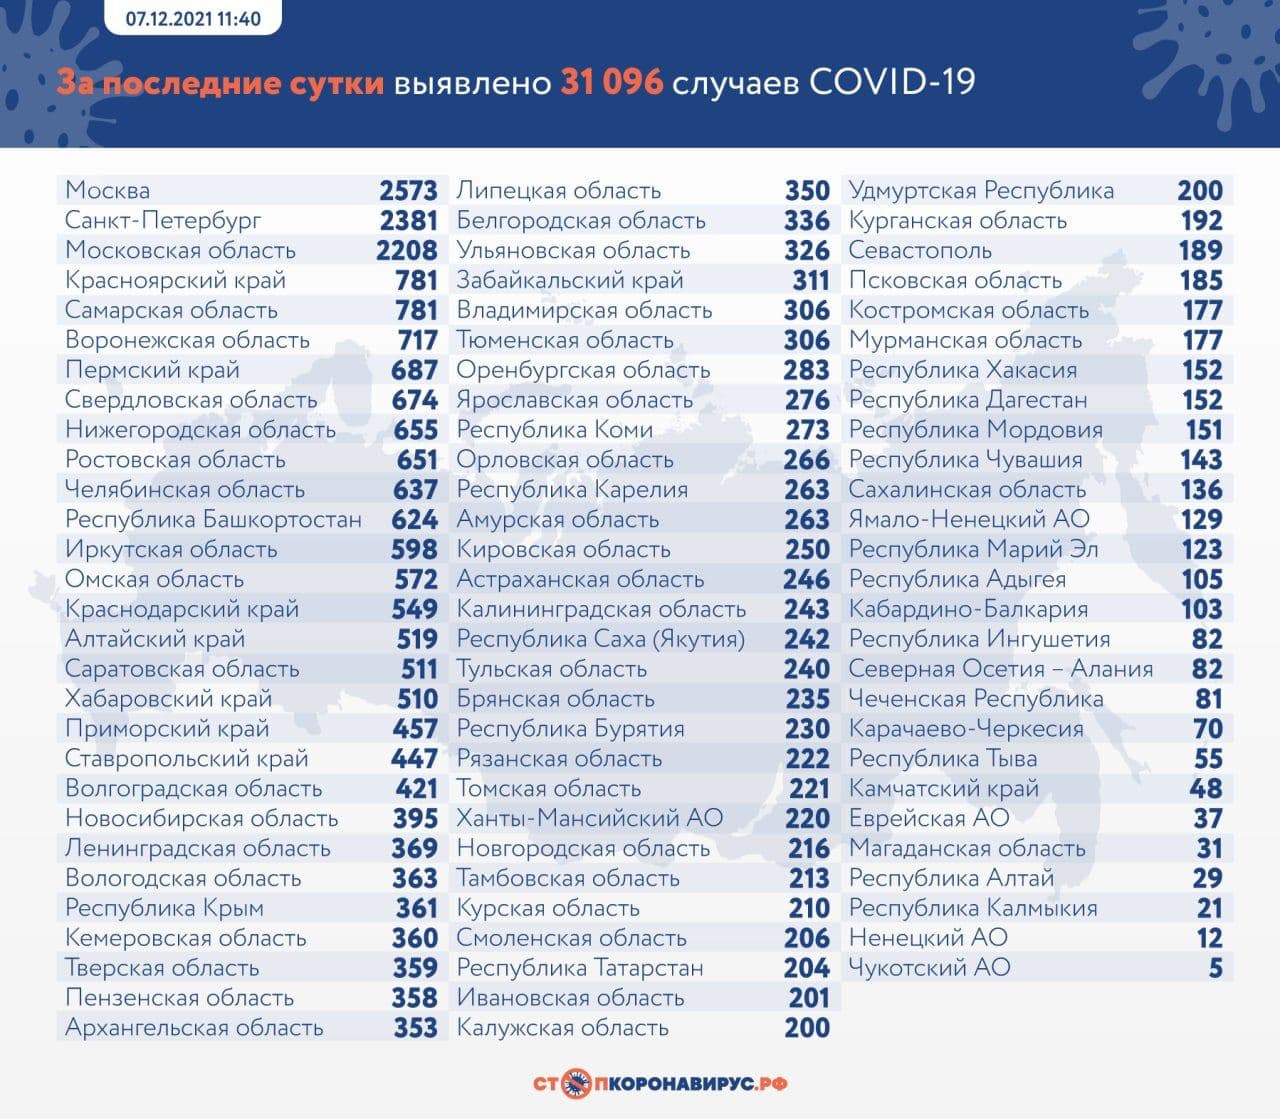 Свежий ковид-листок:
За прошедший день в России выявлено 31 096 новых случаев. За это...